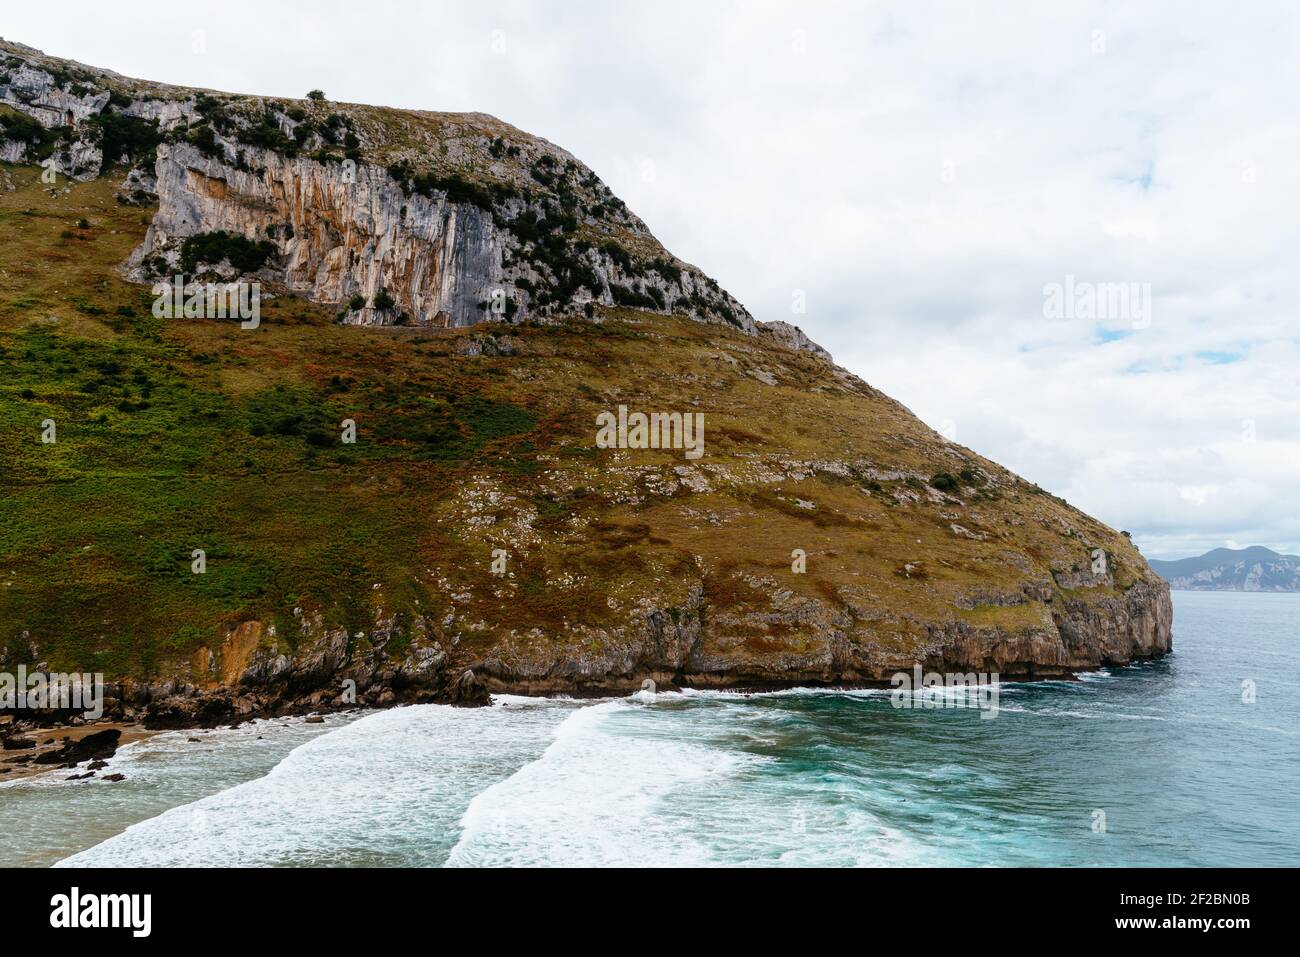 Vista panorámica del promontorio rocoso en la costa. Playa Sonabia en Cantabria, España Foto de stock